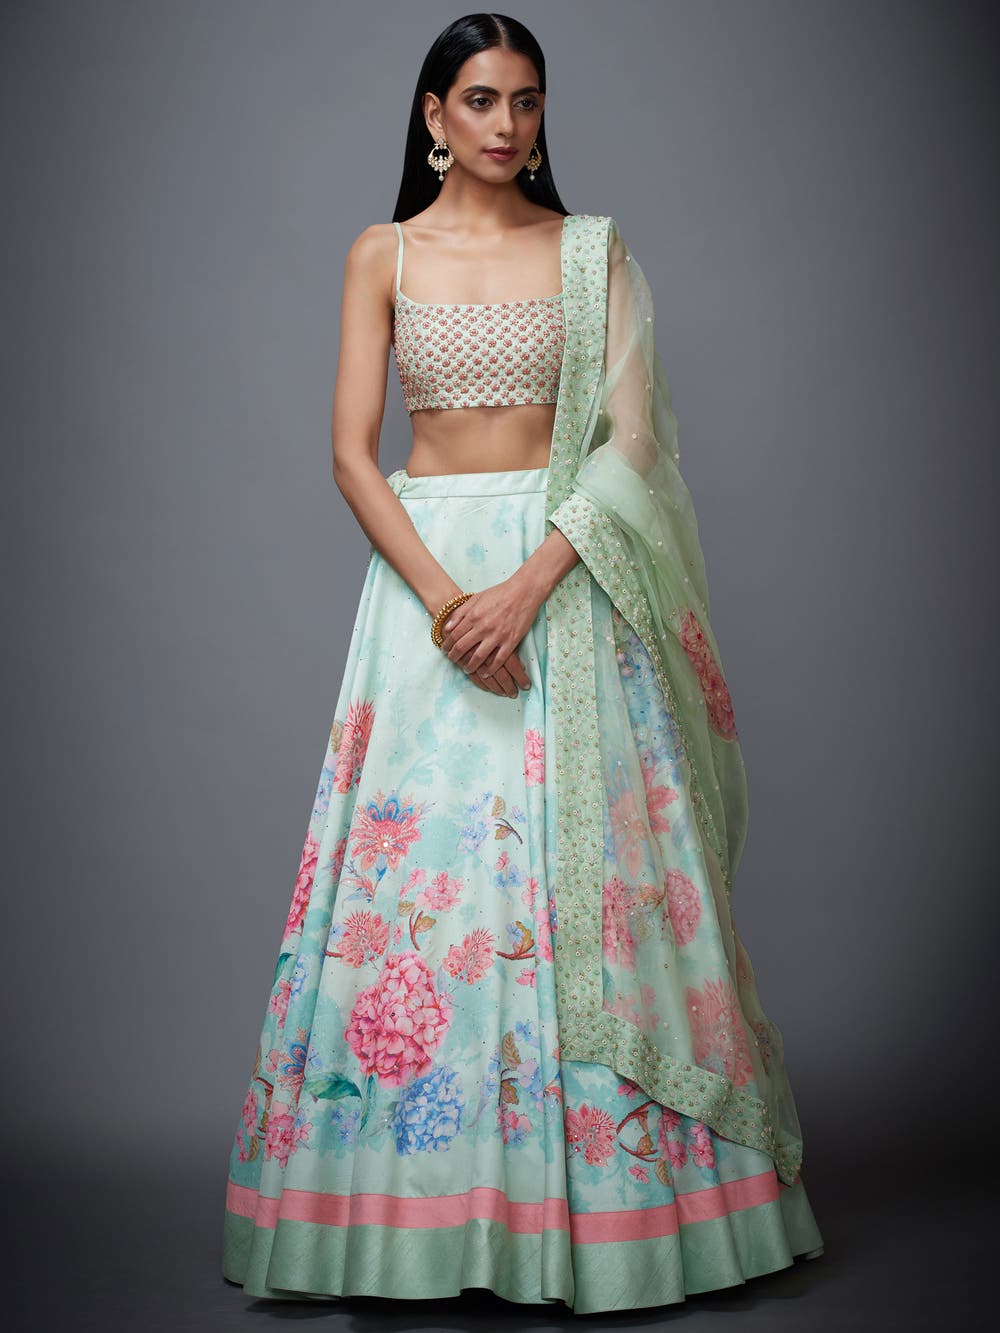 Ritu Kumar - Aditi Rao Hydari for Ritu Kumar Couture'23 at... | Facebook